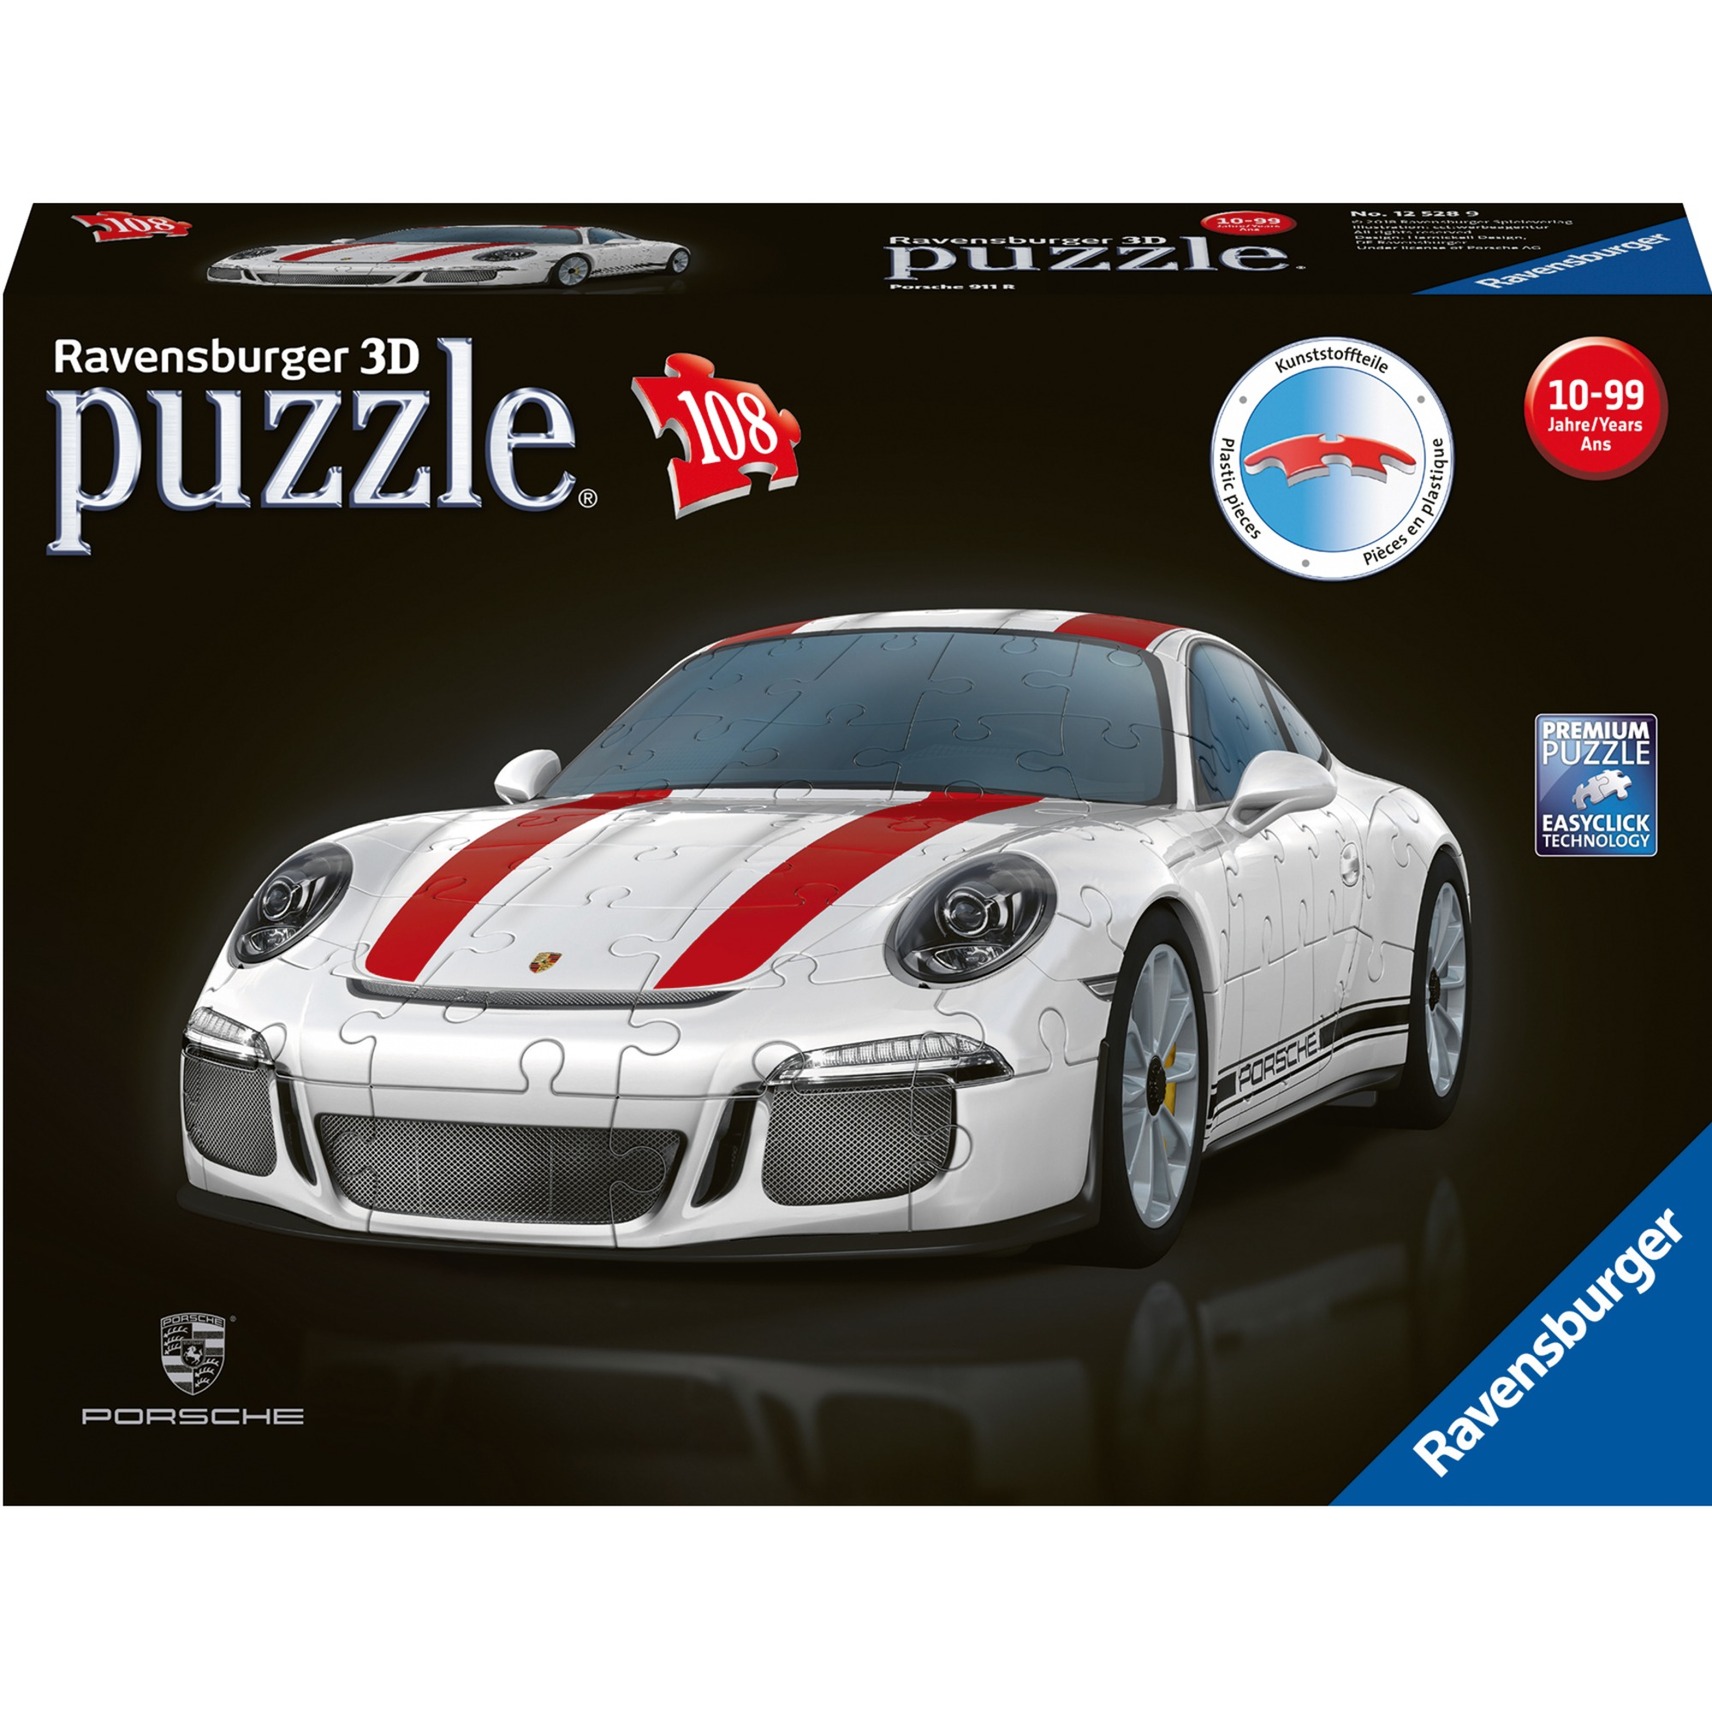 Image of Alternate - 3D-Puzzle Porsche 911 R online einkaufen bei Alternate